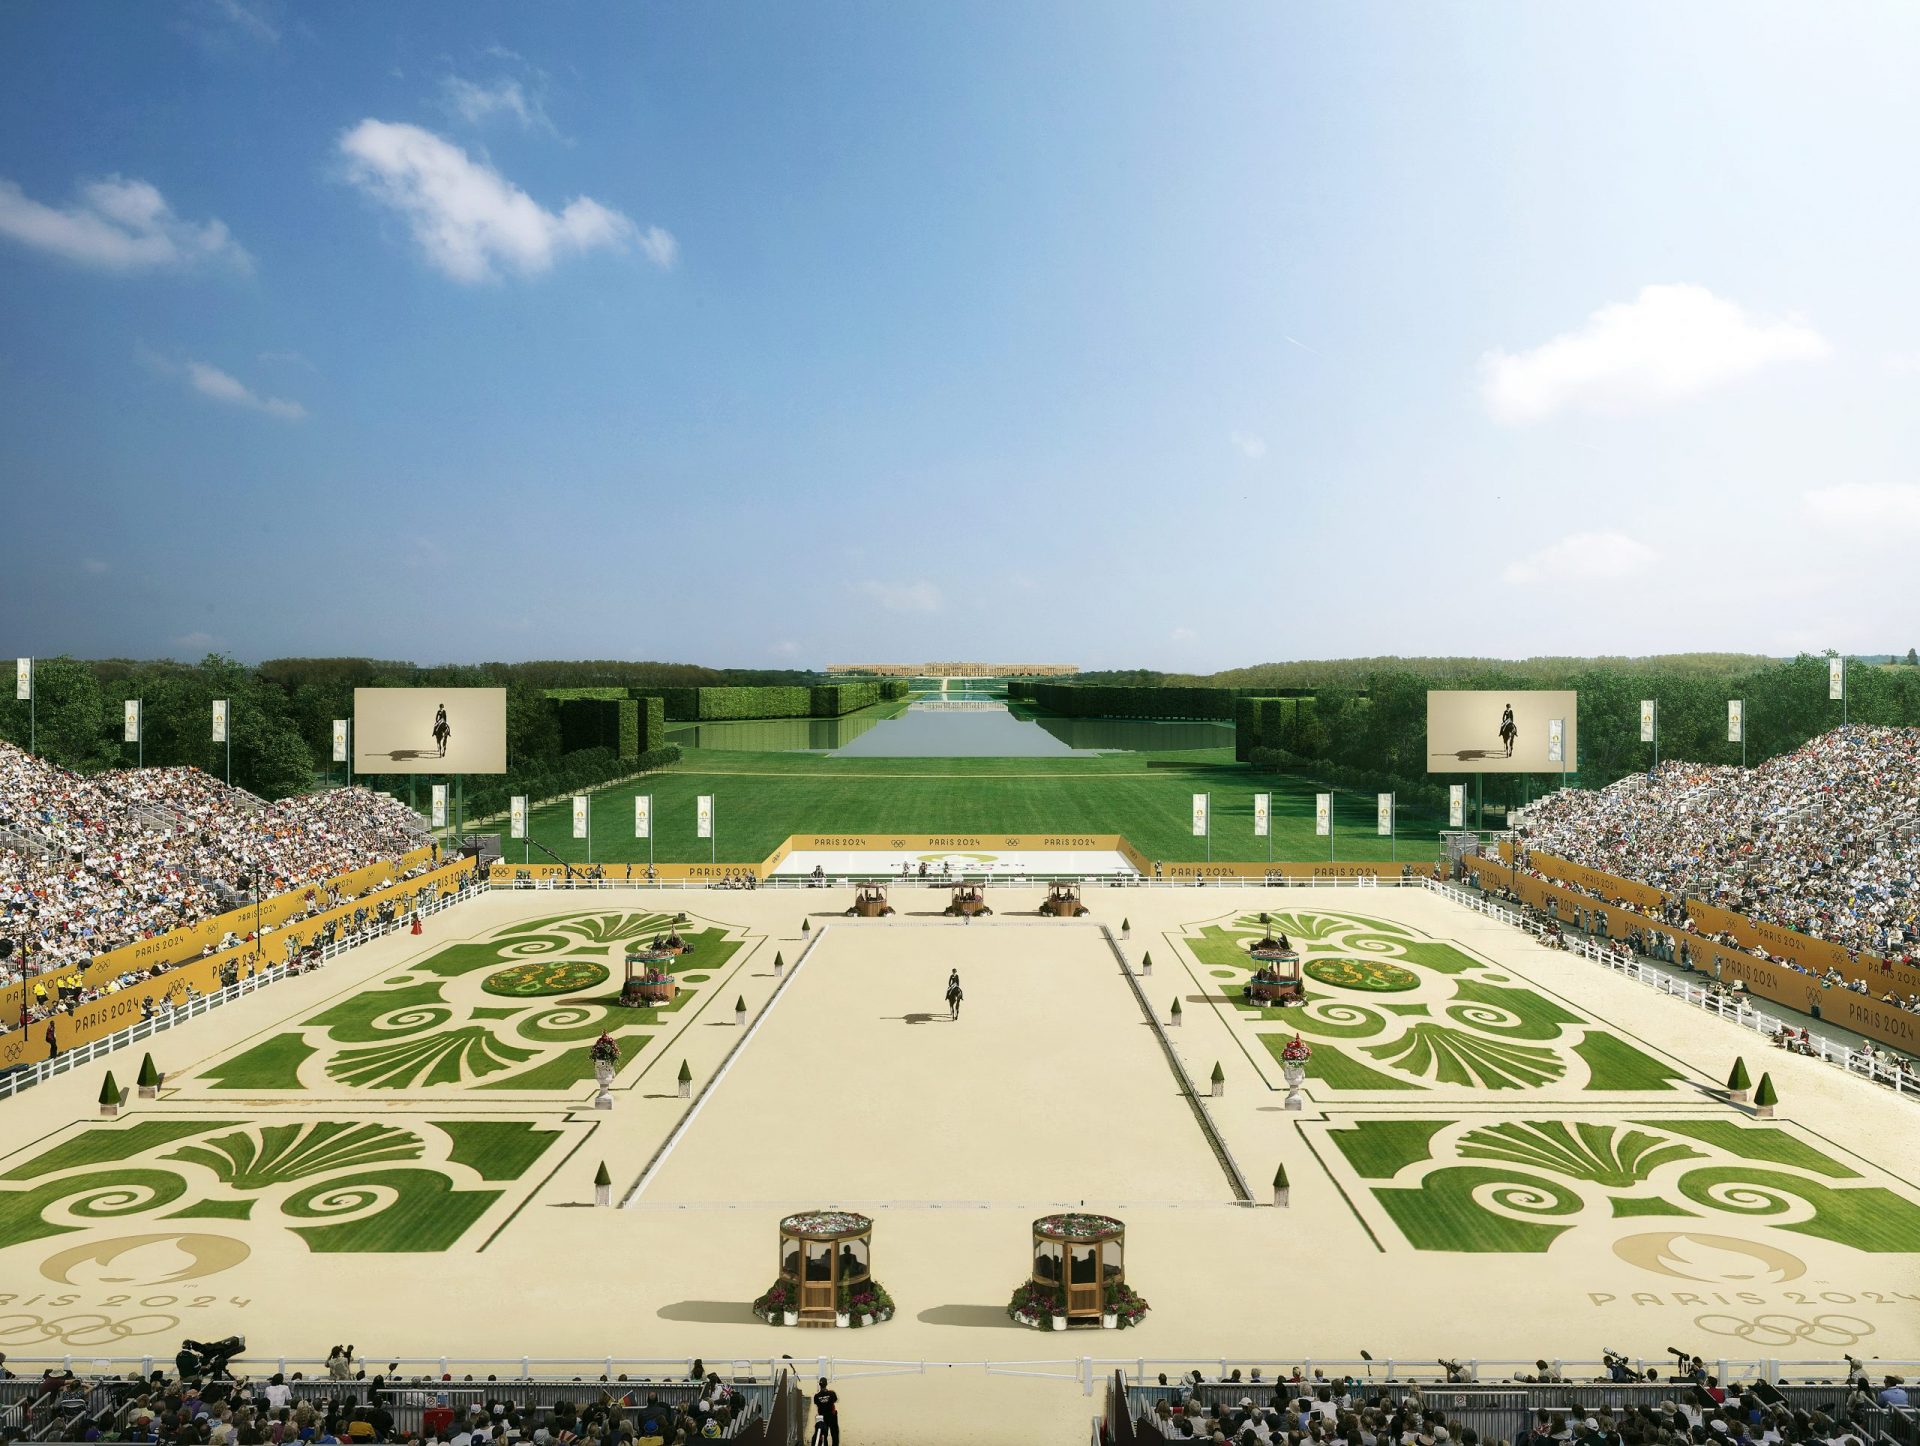  París 2024: conoce los primeros detalles de los próximos juegos olímpicos